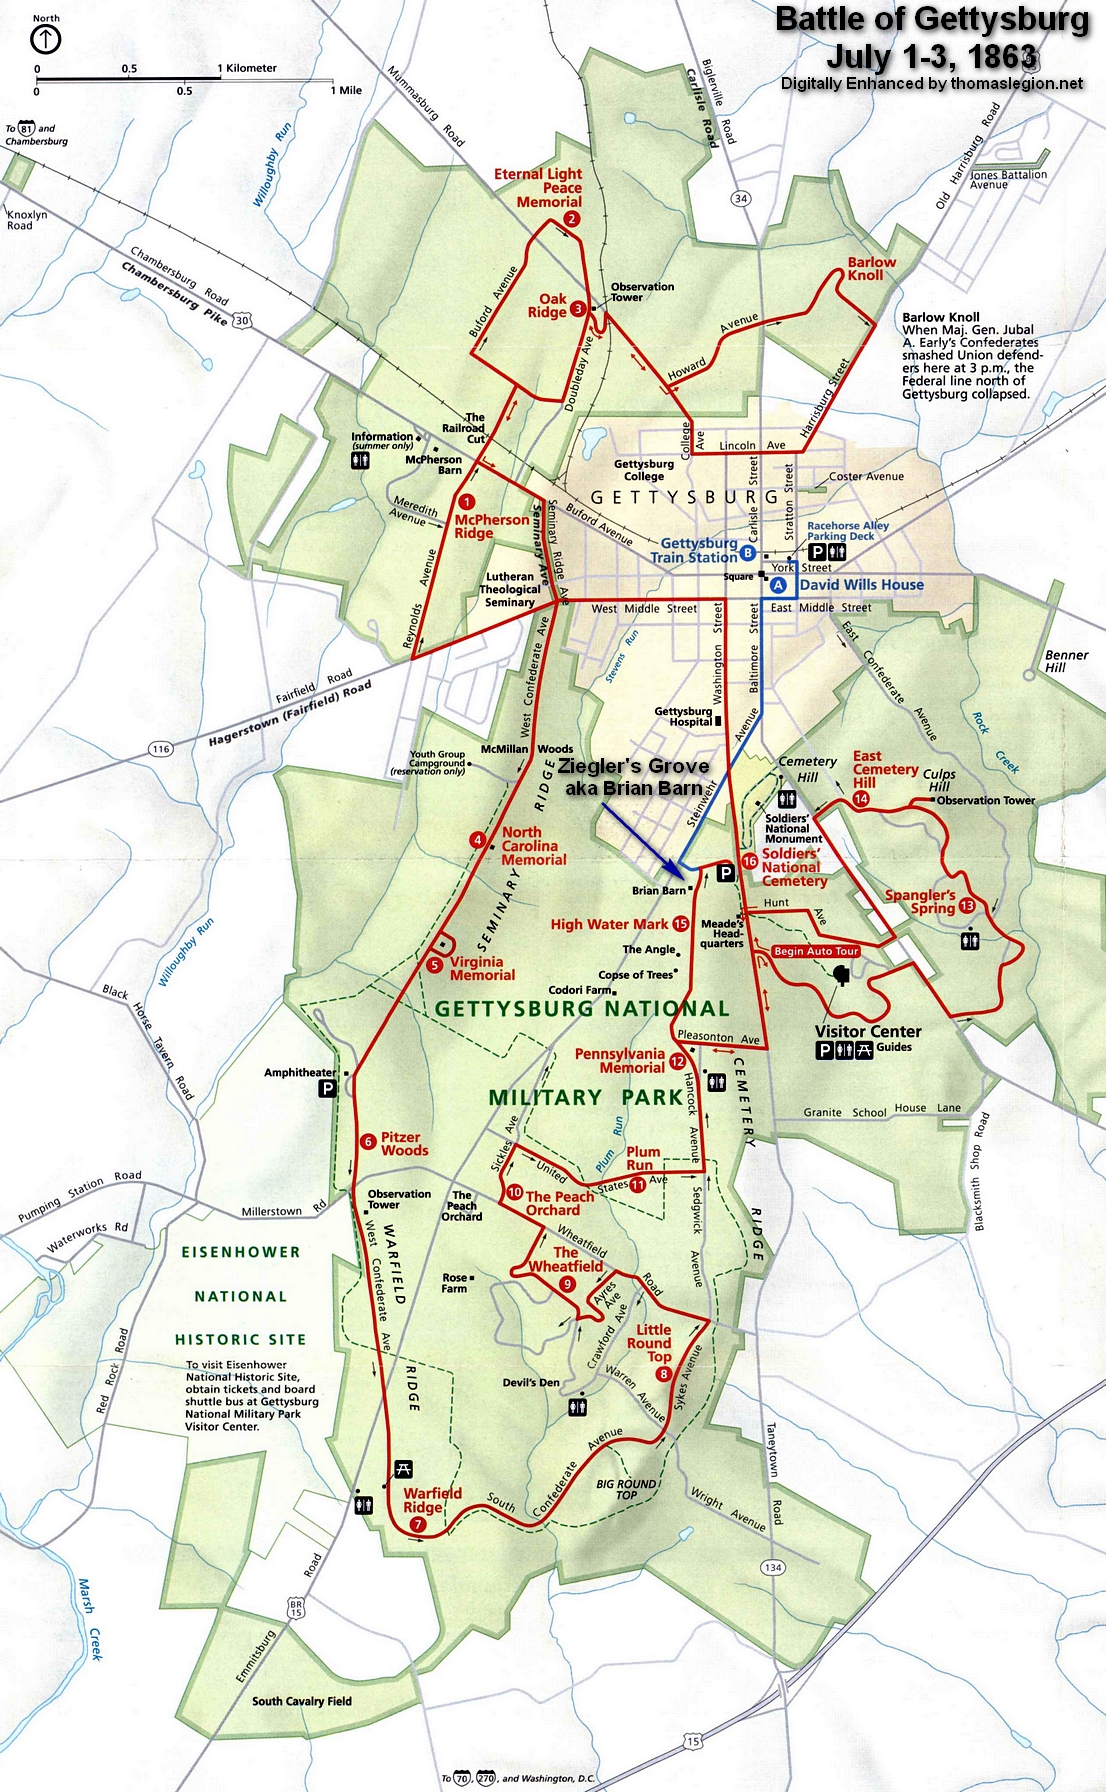 Ziegler's Grove, Battle of Gettysburg.jpg